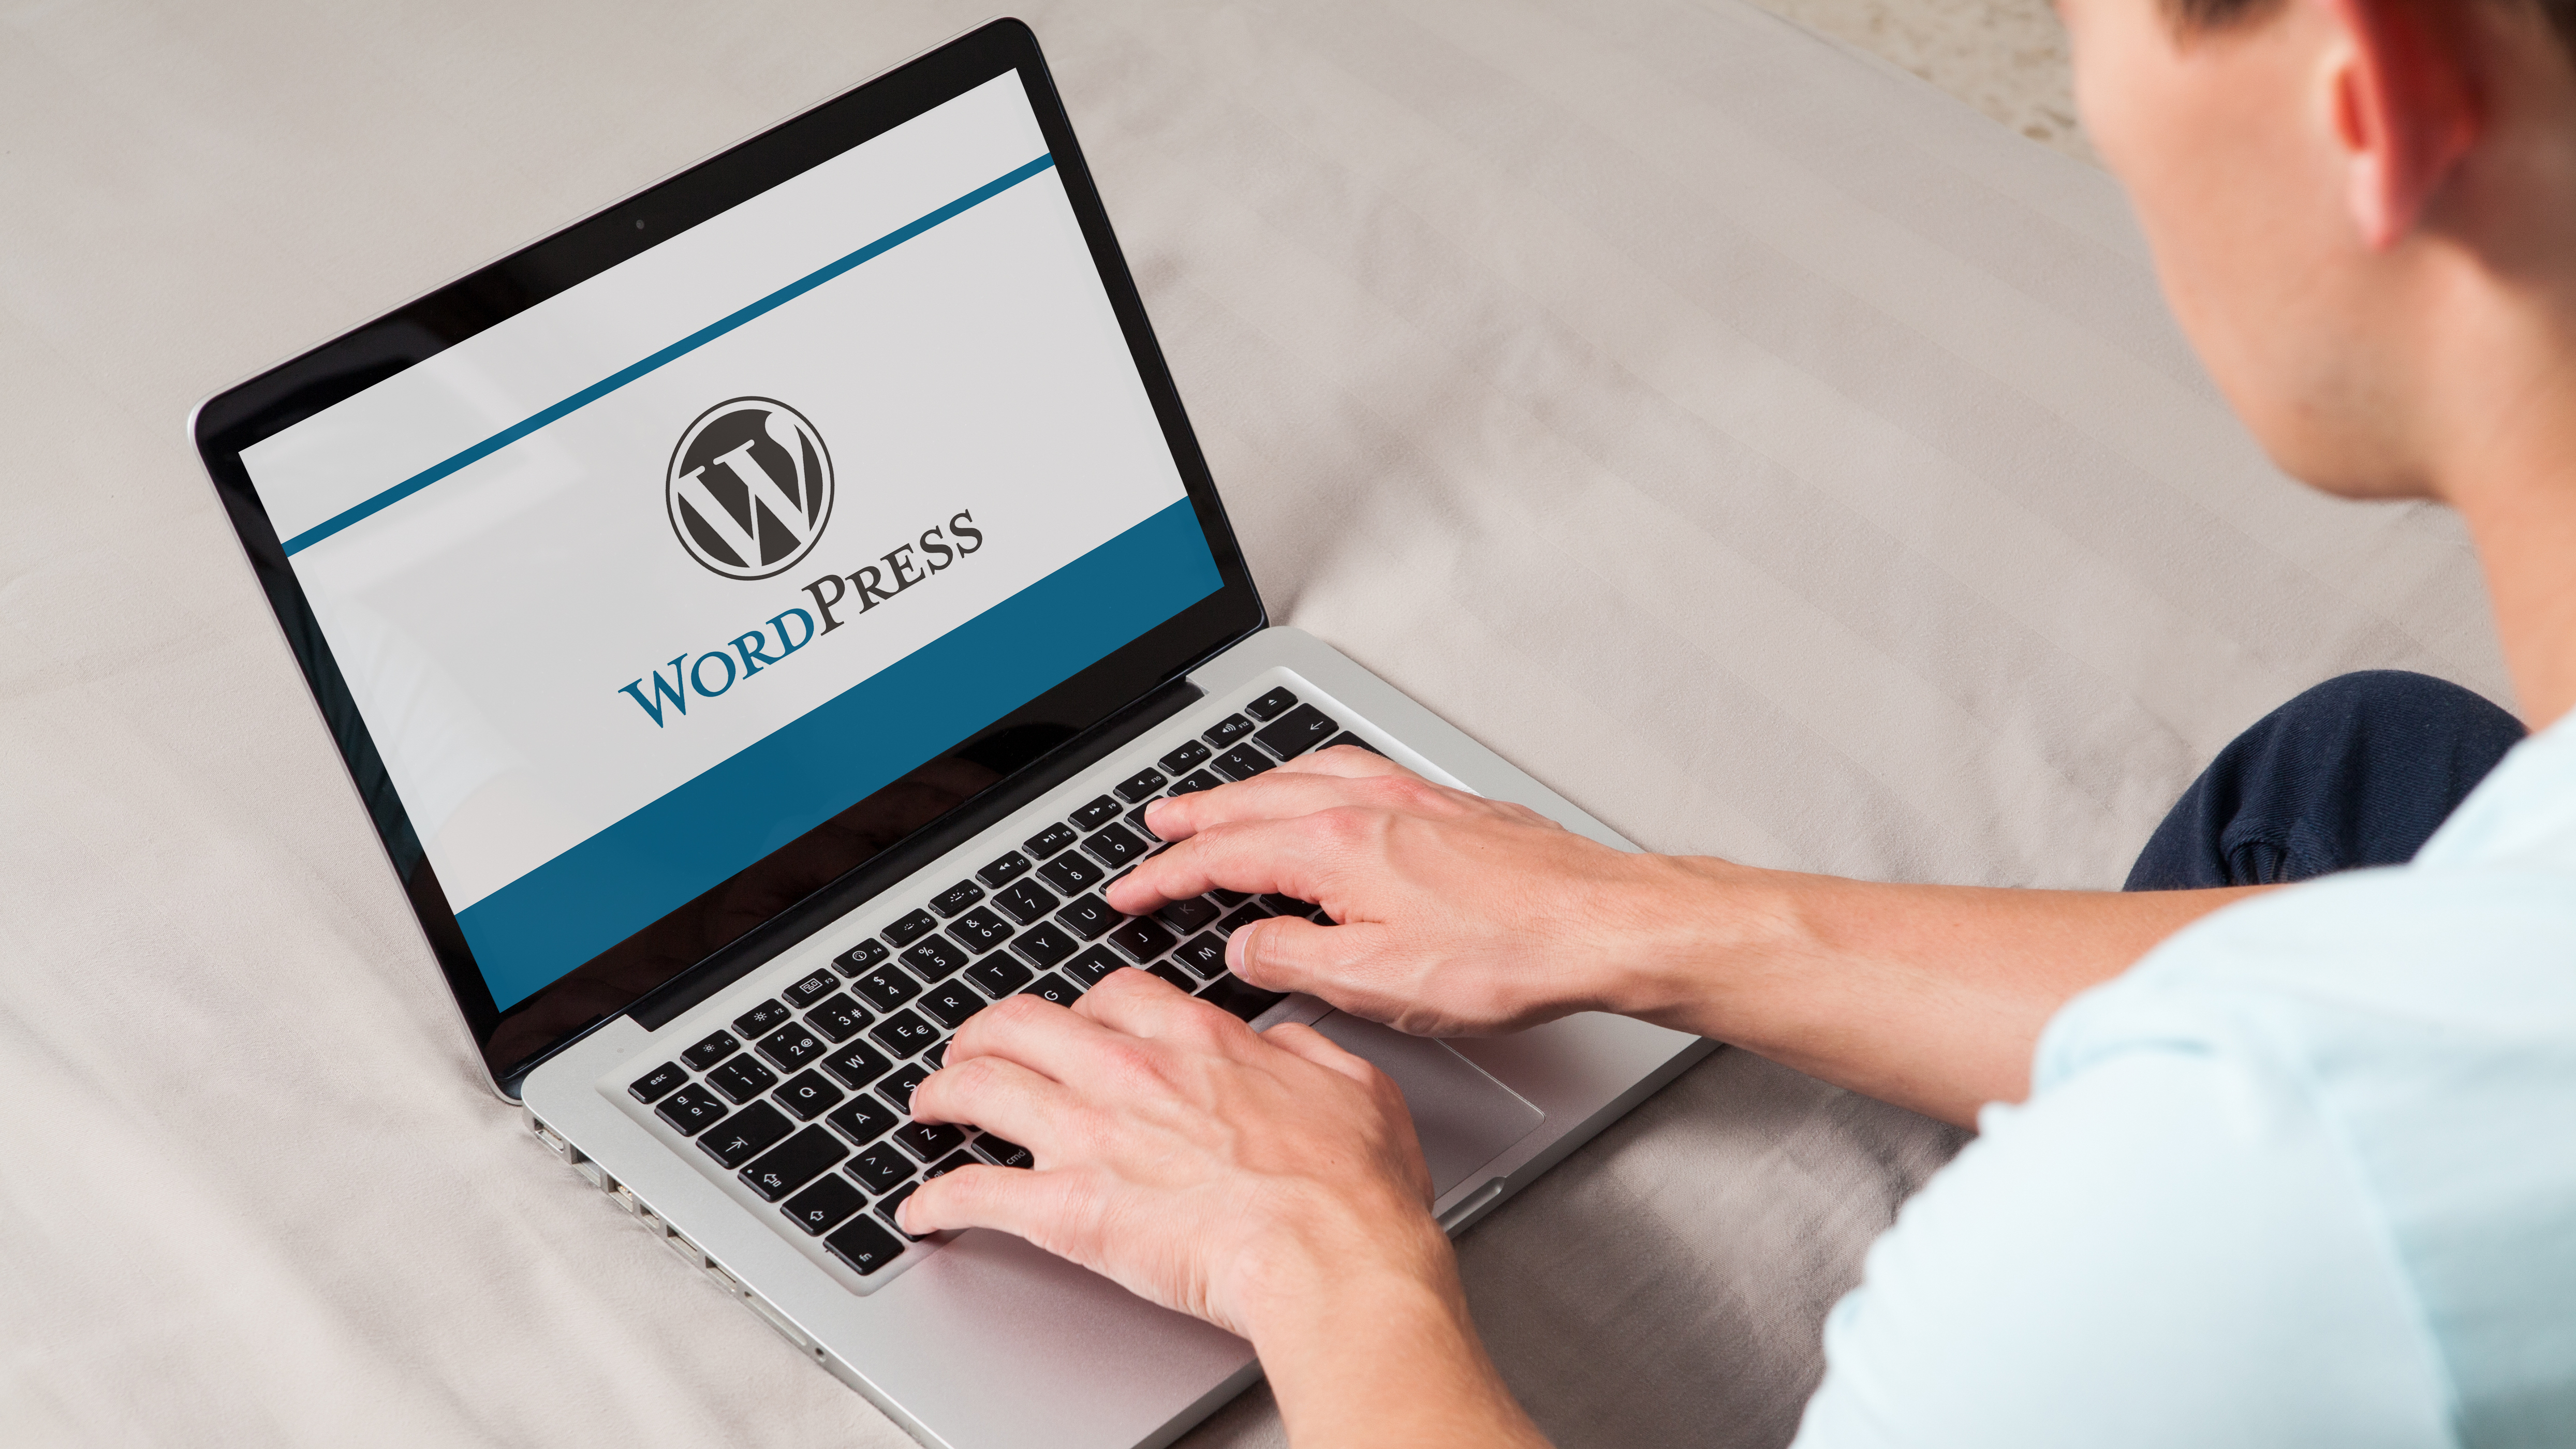 Этот критический недостаток плагина WordPress может позволить хакерам захватить ваш сайт